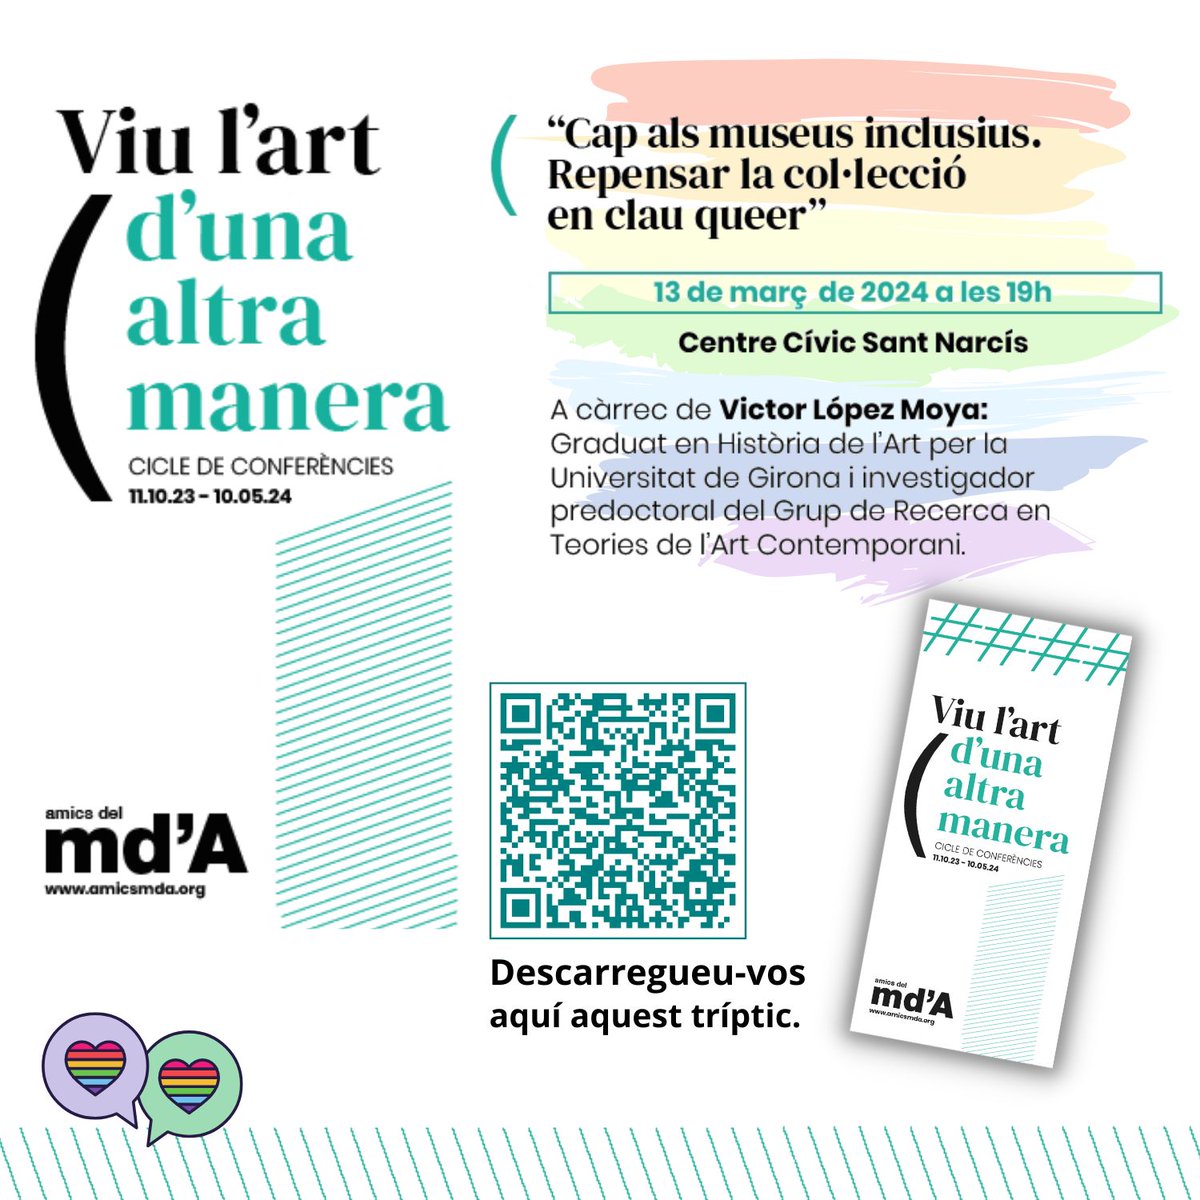 Conferència 'Cap als museus inclusius. Repensar la col·lecció en clau queer' a càrrec de Víctor López Moya, graduat en Història de l'Art per la UdG. Al Centre Cívic Sant Narcís, 13 de març de 2024, a les 19 h. @Girona_Cat @vikillu